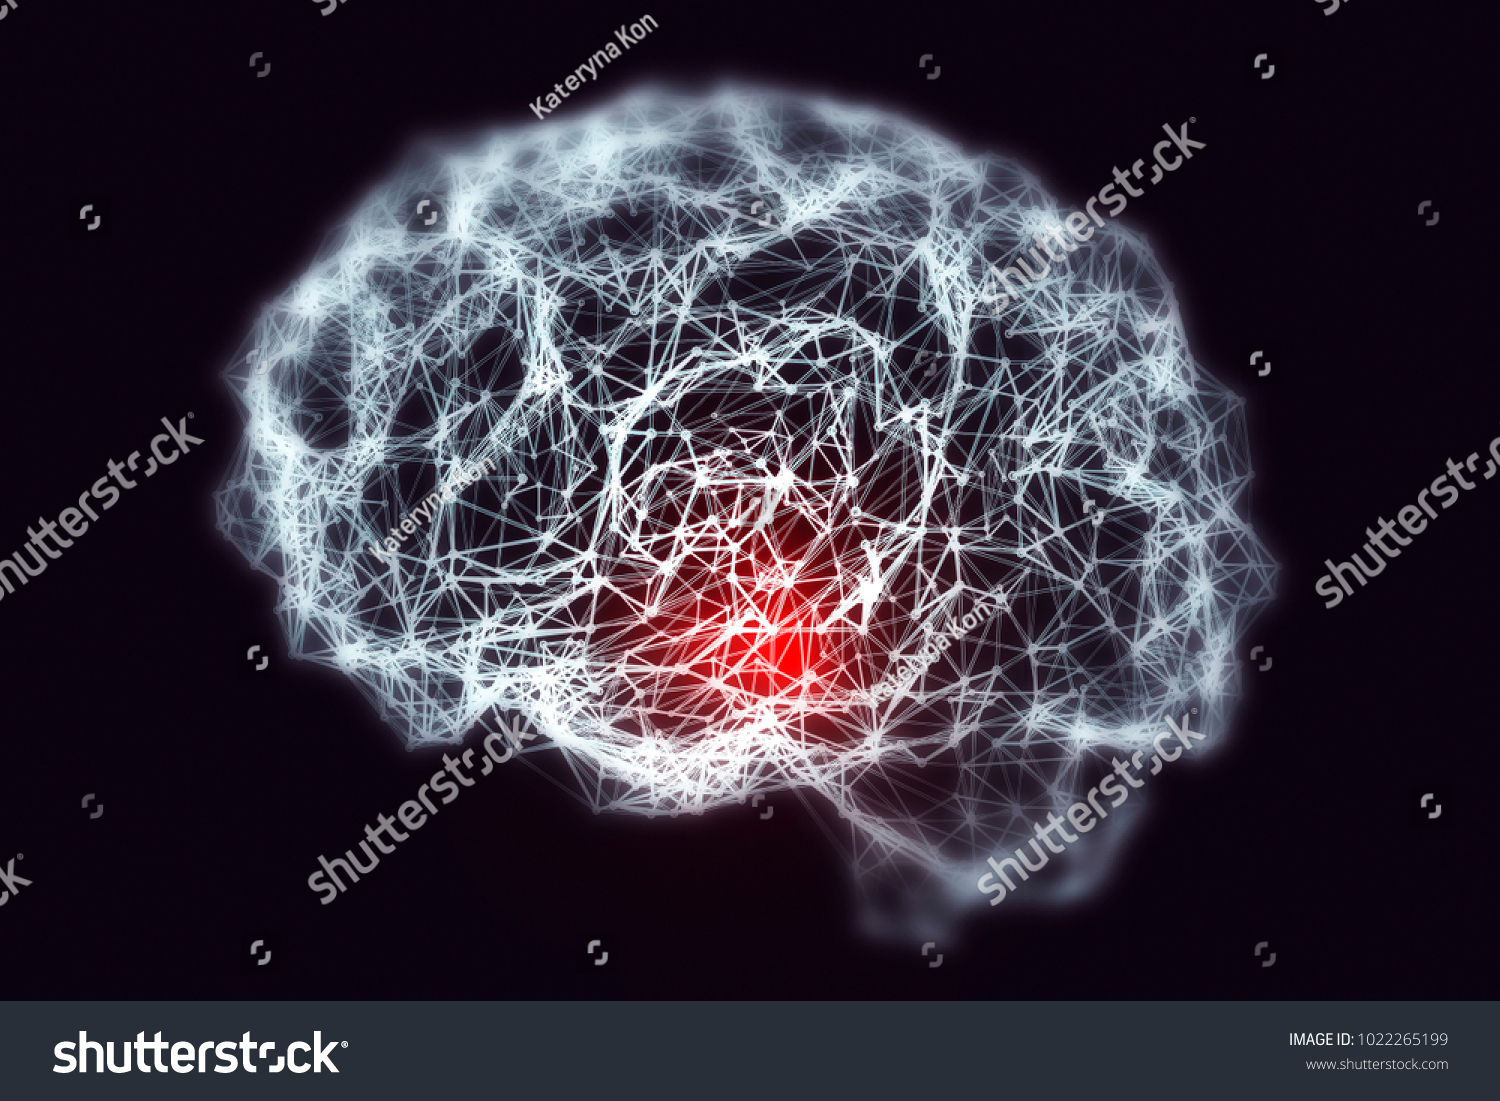 認知症とアルツハイマー病の医学コンセプト 3dイラスト 記憶喪失 脳の老化 ニューロンのネットワークを失った脳のぼやけを示すコンセプト的な画像 の イラスト素材